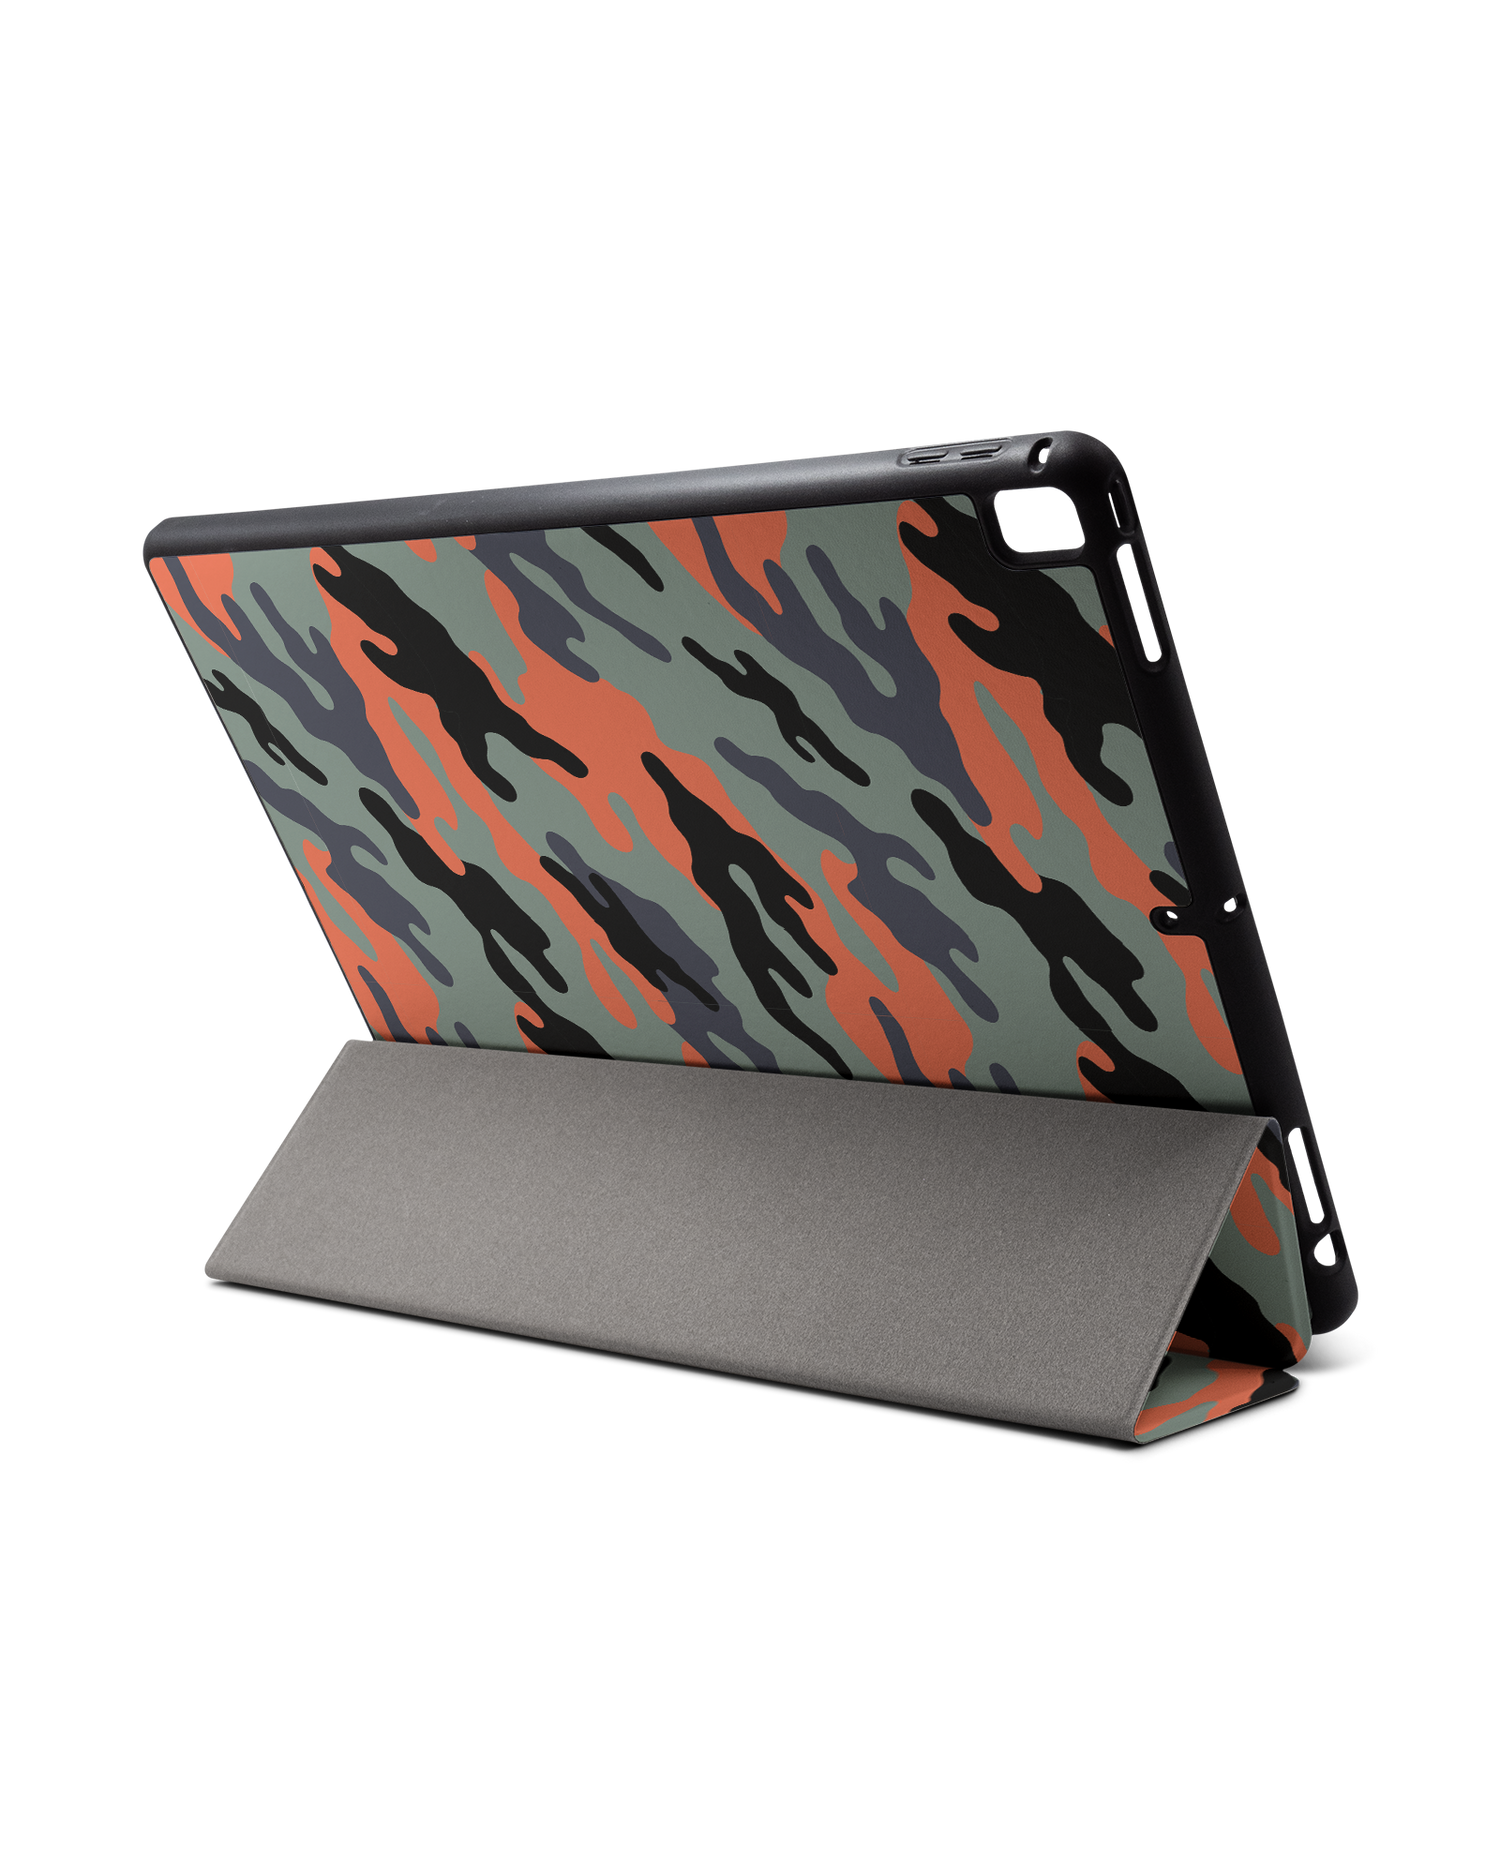 Camo Sunset iPad Hülle mit Stifthalter für Apple iPad Pro 2 12.9'' (2017): Aufgestellt im Querformat von hinten